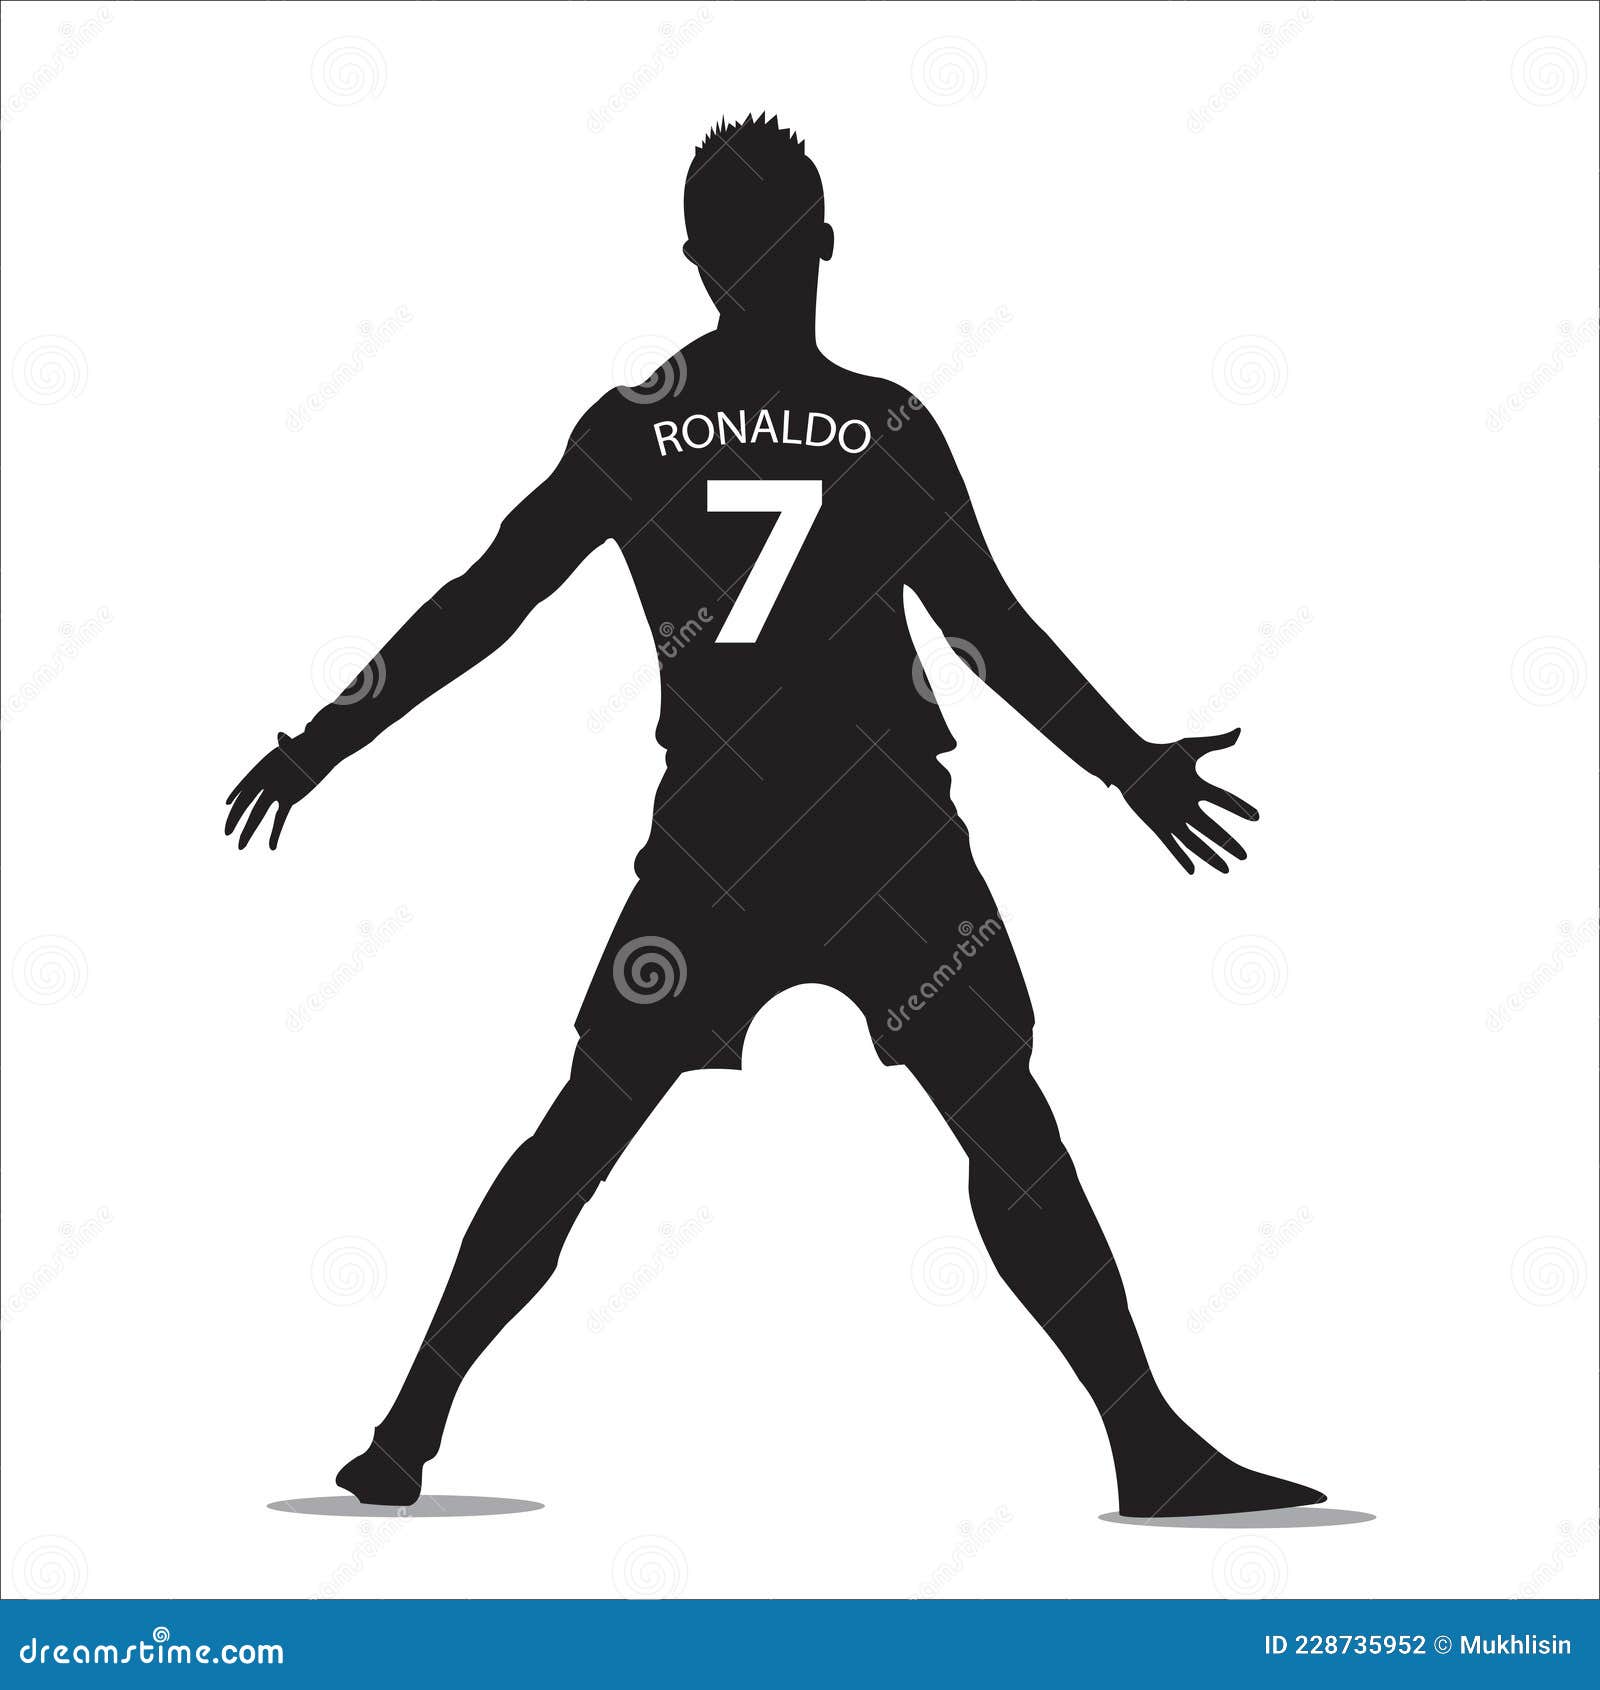 Cristiano Ronaldo Sketch, Size: A4